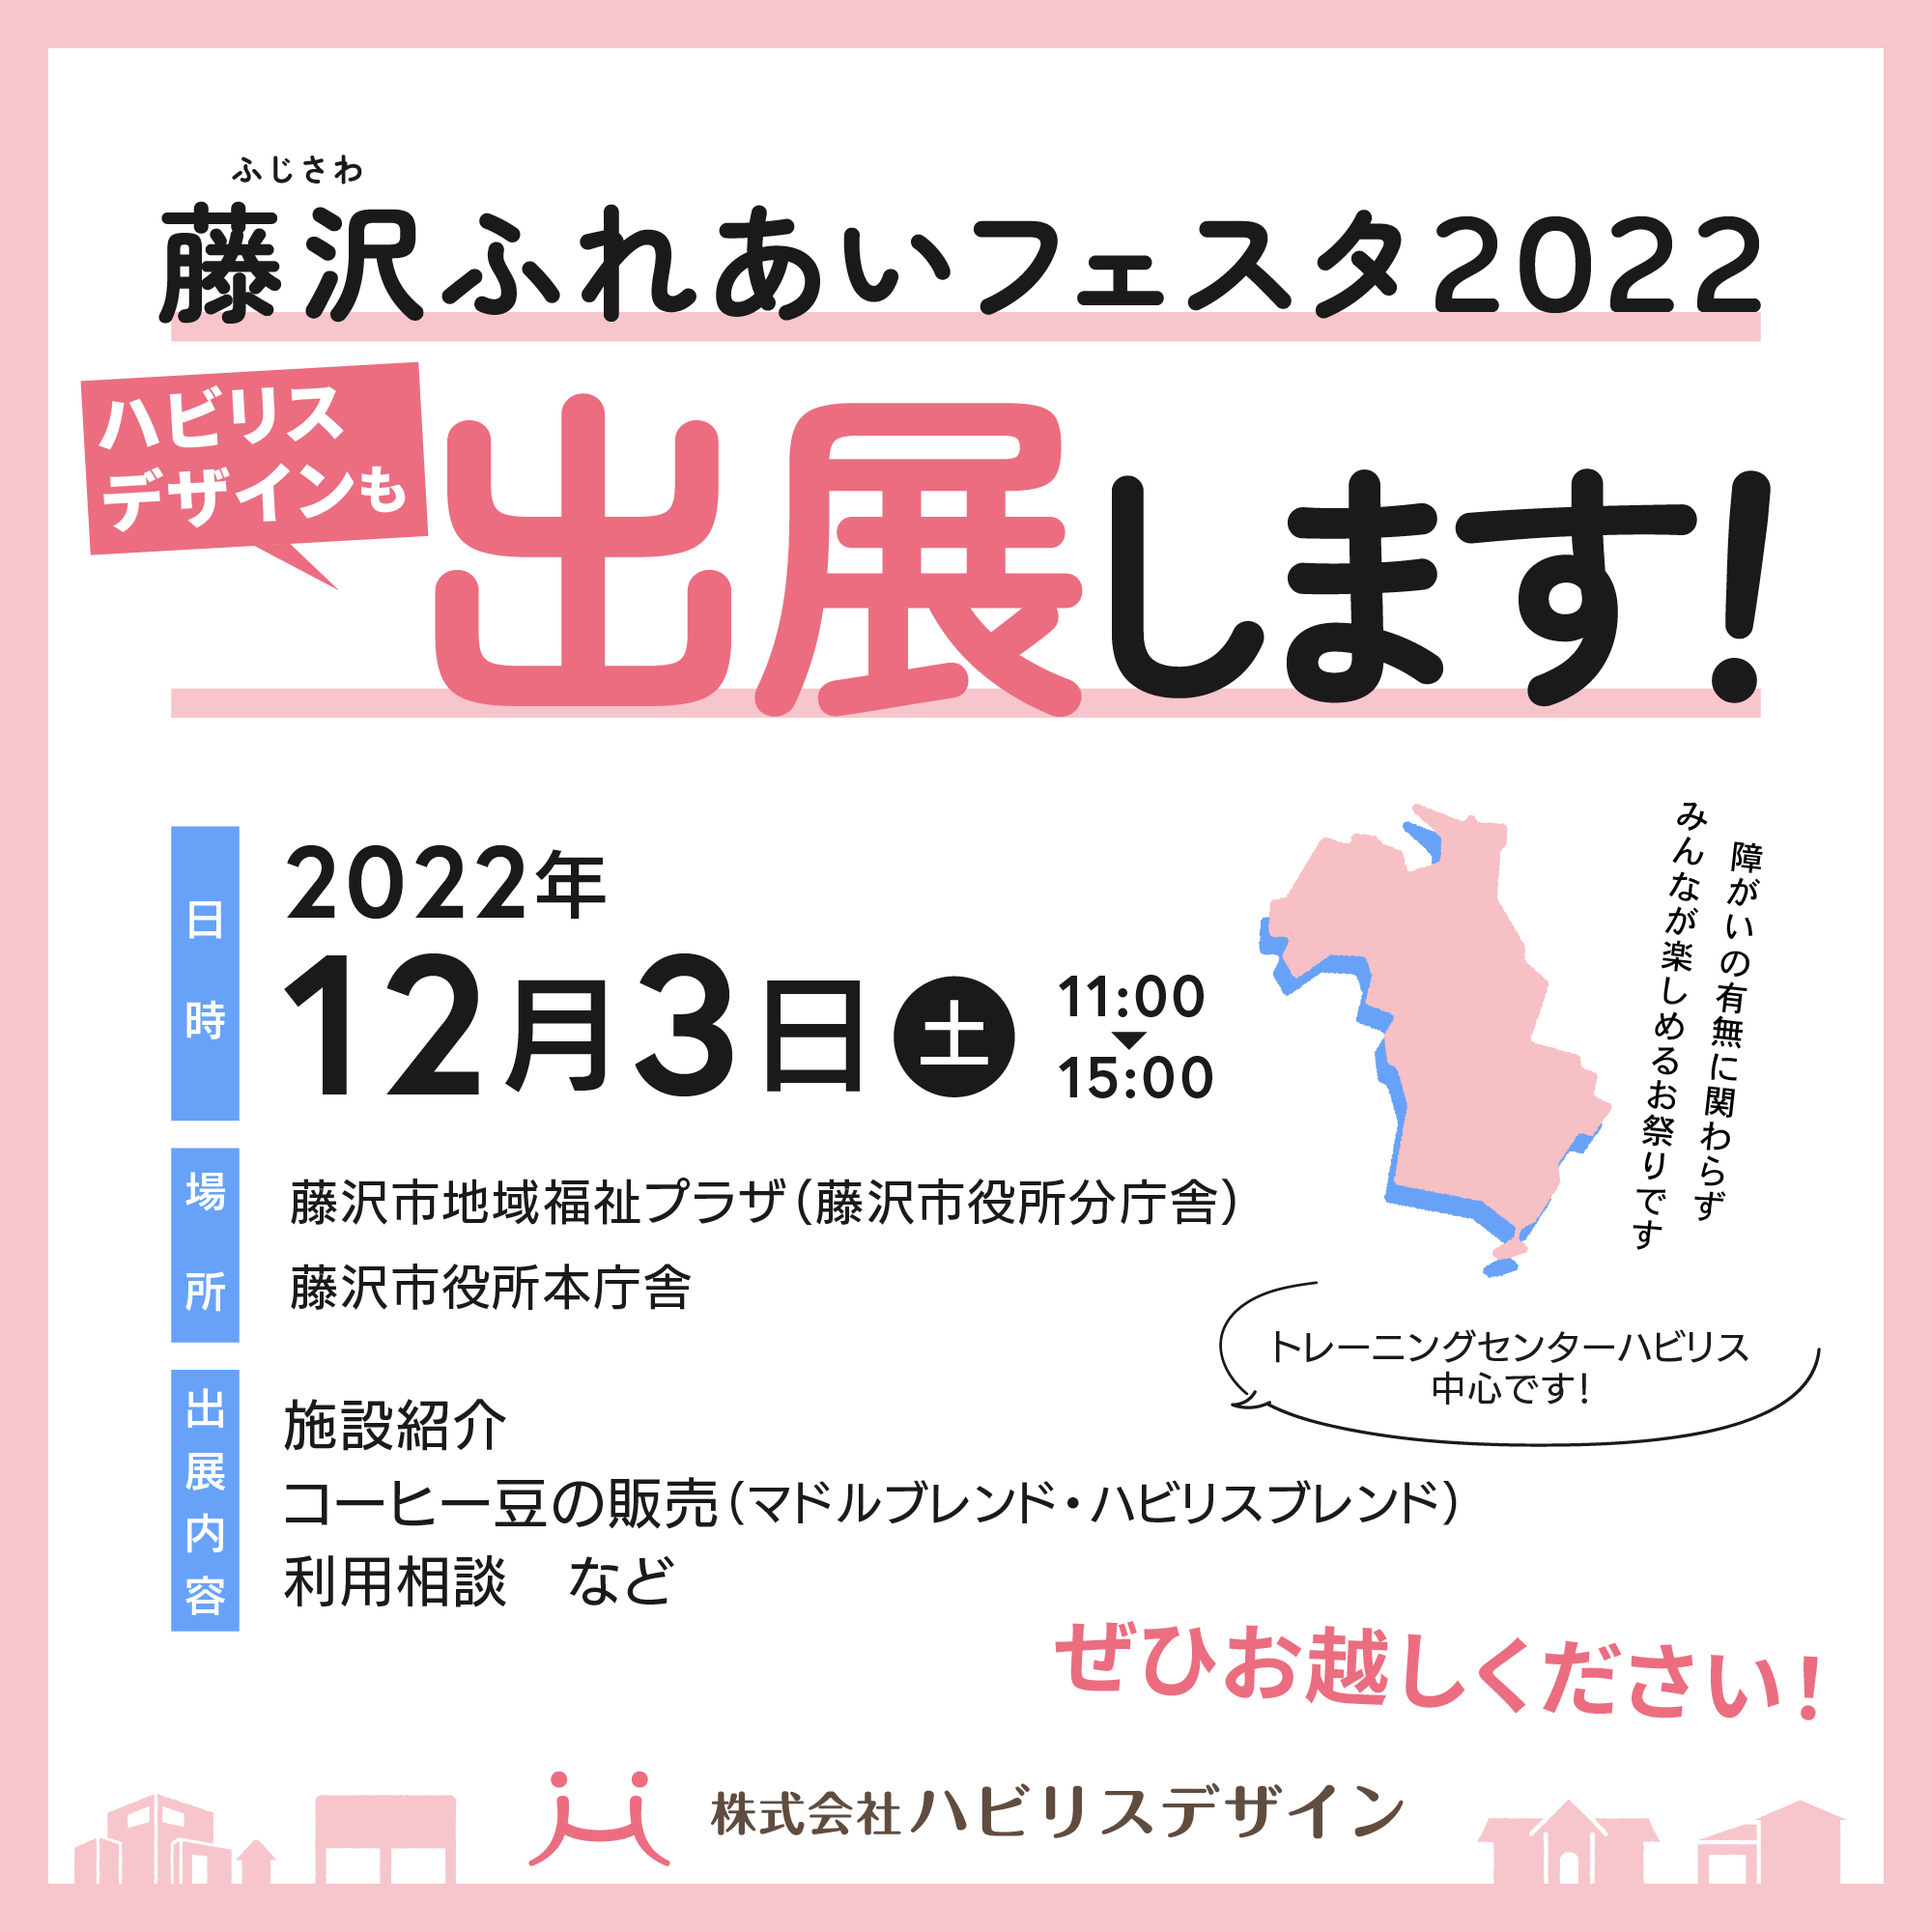 ［イベント出展のお知らせ］藤沢ふれあいフェスタ2022